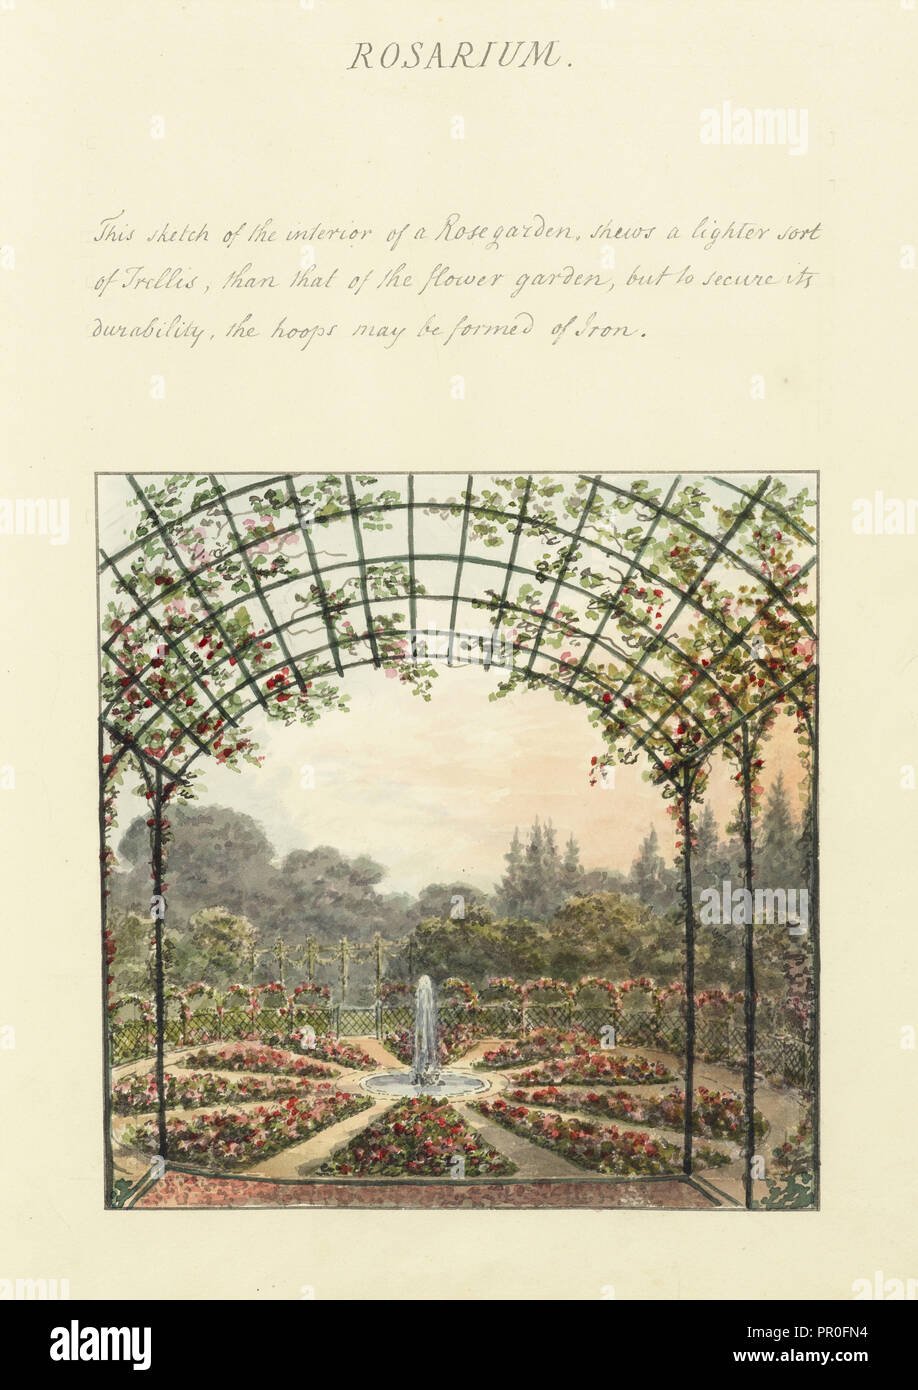 Rosarium, Humphry Repton architettura e paesaggio progetta, 1807-1813, relazione concernente i giardini di Ashridge, rispettosamente Foto Stock